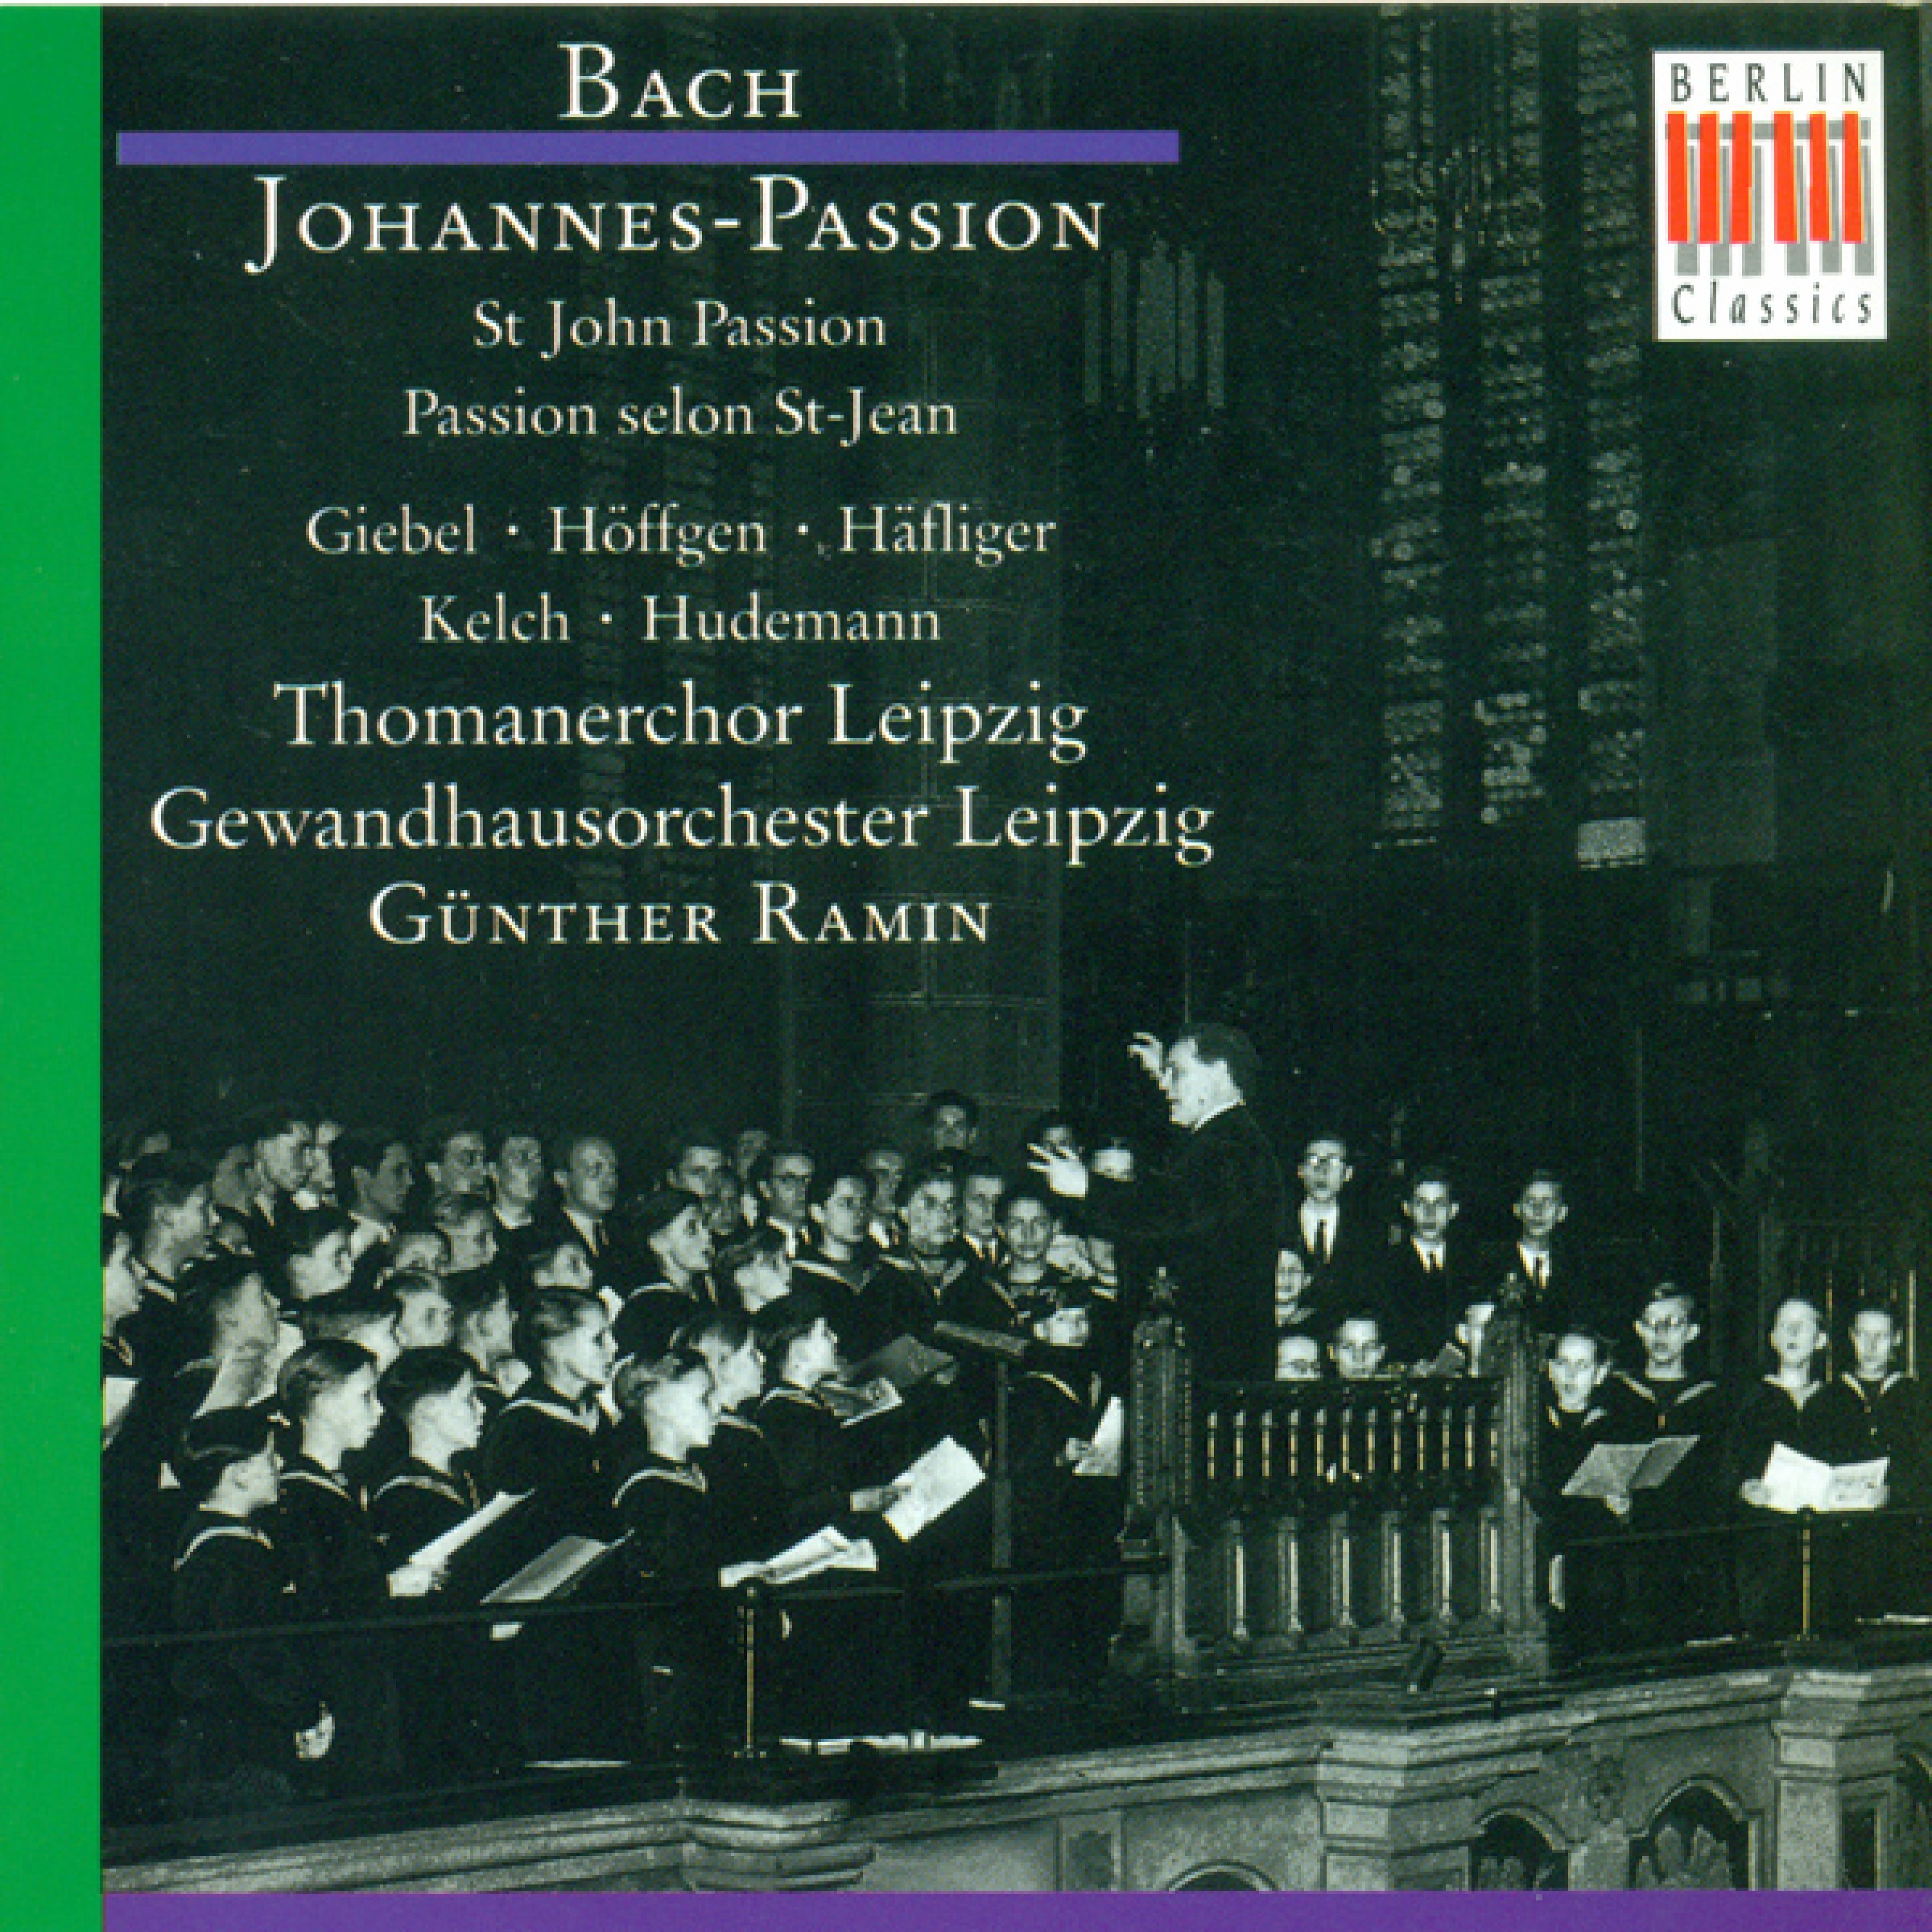 Johannes-Passion, BWV 245: Part II - "Wir haben ein Gesetz"